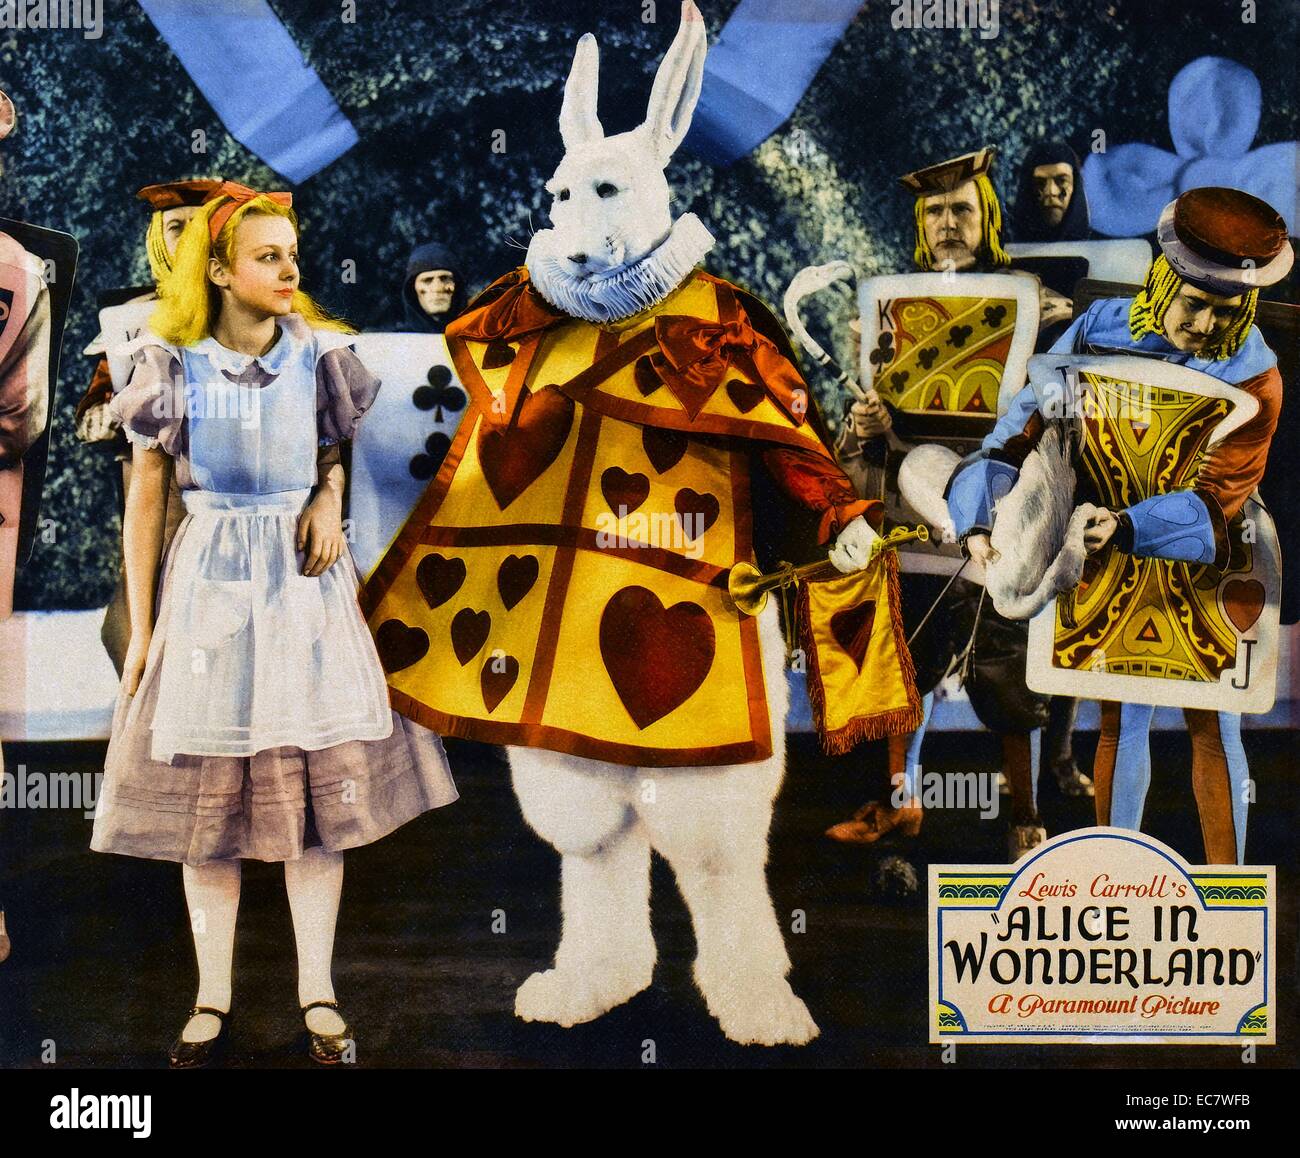 Alice in Wonderland es una película de 1933 versión de la famosa novela de Lewis Carroll Alicia. Todo es vivir-acción, excepto la morsa y el Carpintero secuencia, que fue animado por Harman-Ising Studio. Protagonizada por Charlotte Henry y W.C. Los campos. Foto de stock